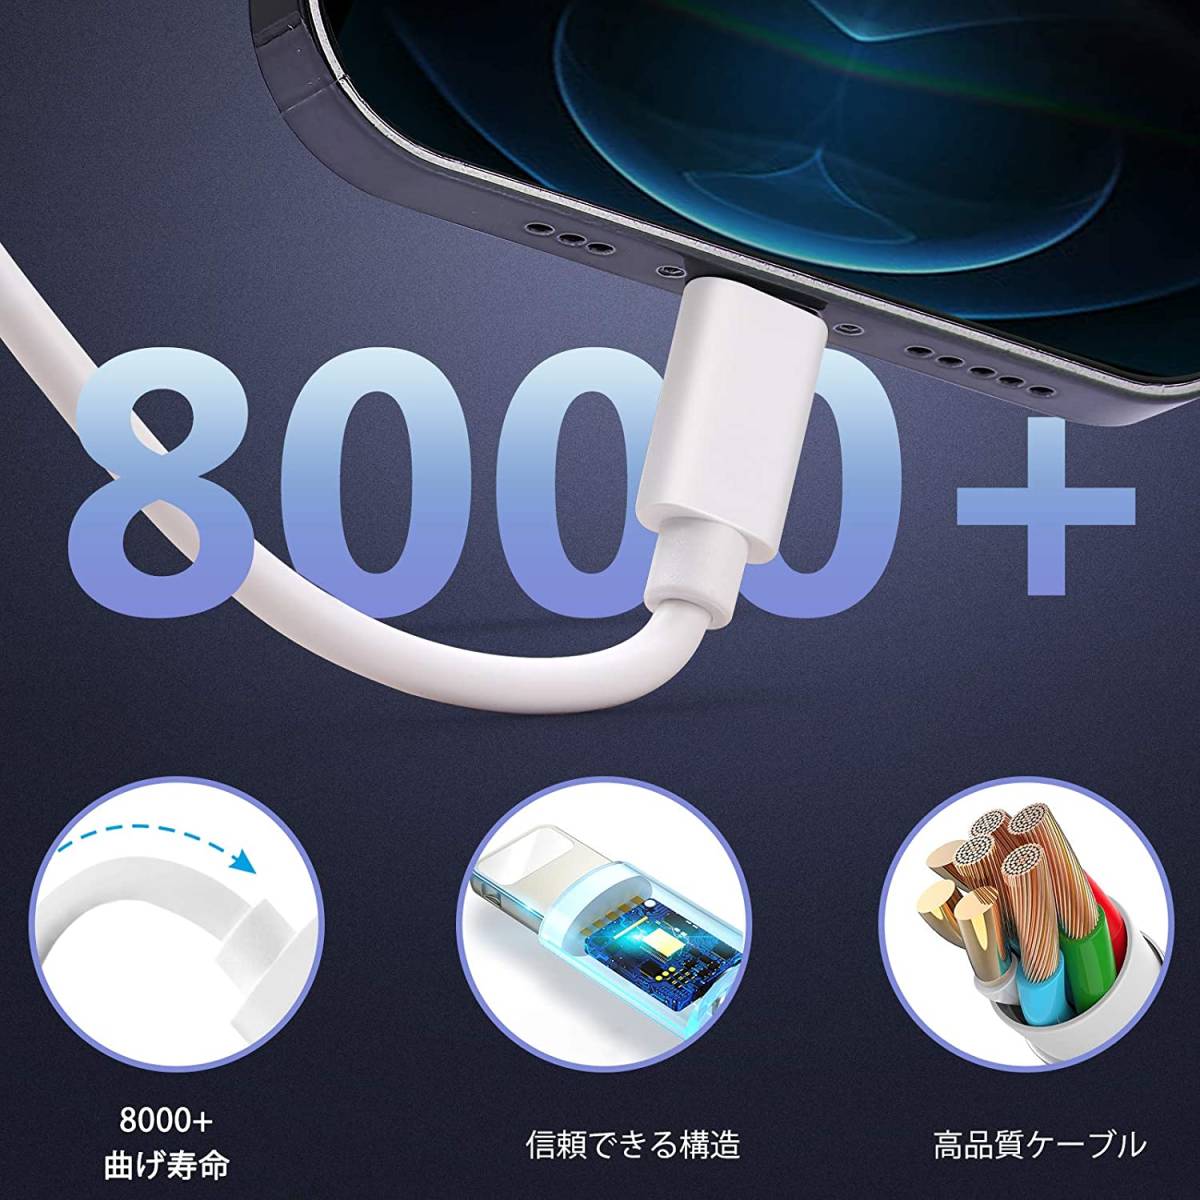 【大特価】iPhone 充電ケーブル ライトニングケーブル 1M 6本セット アイフォン USB 充電コード Lightning ケーブル_画像6